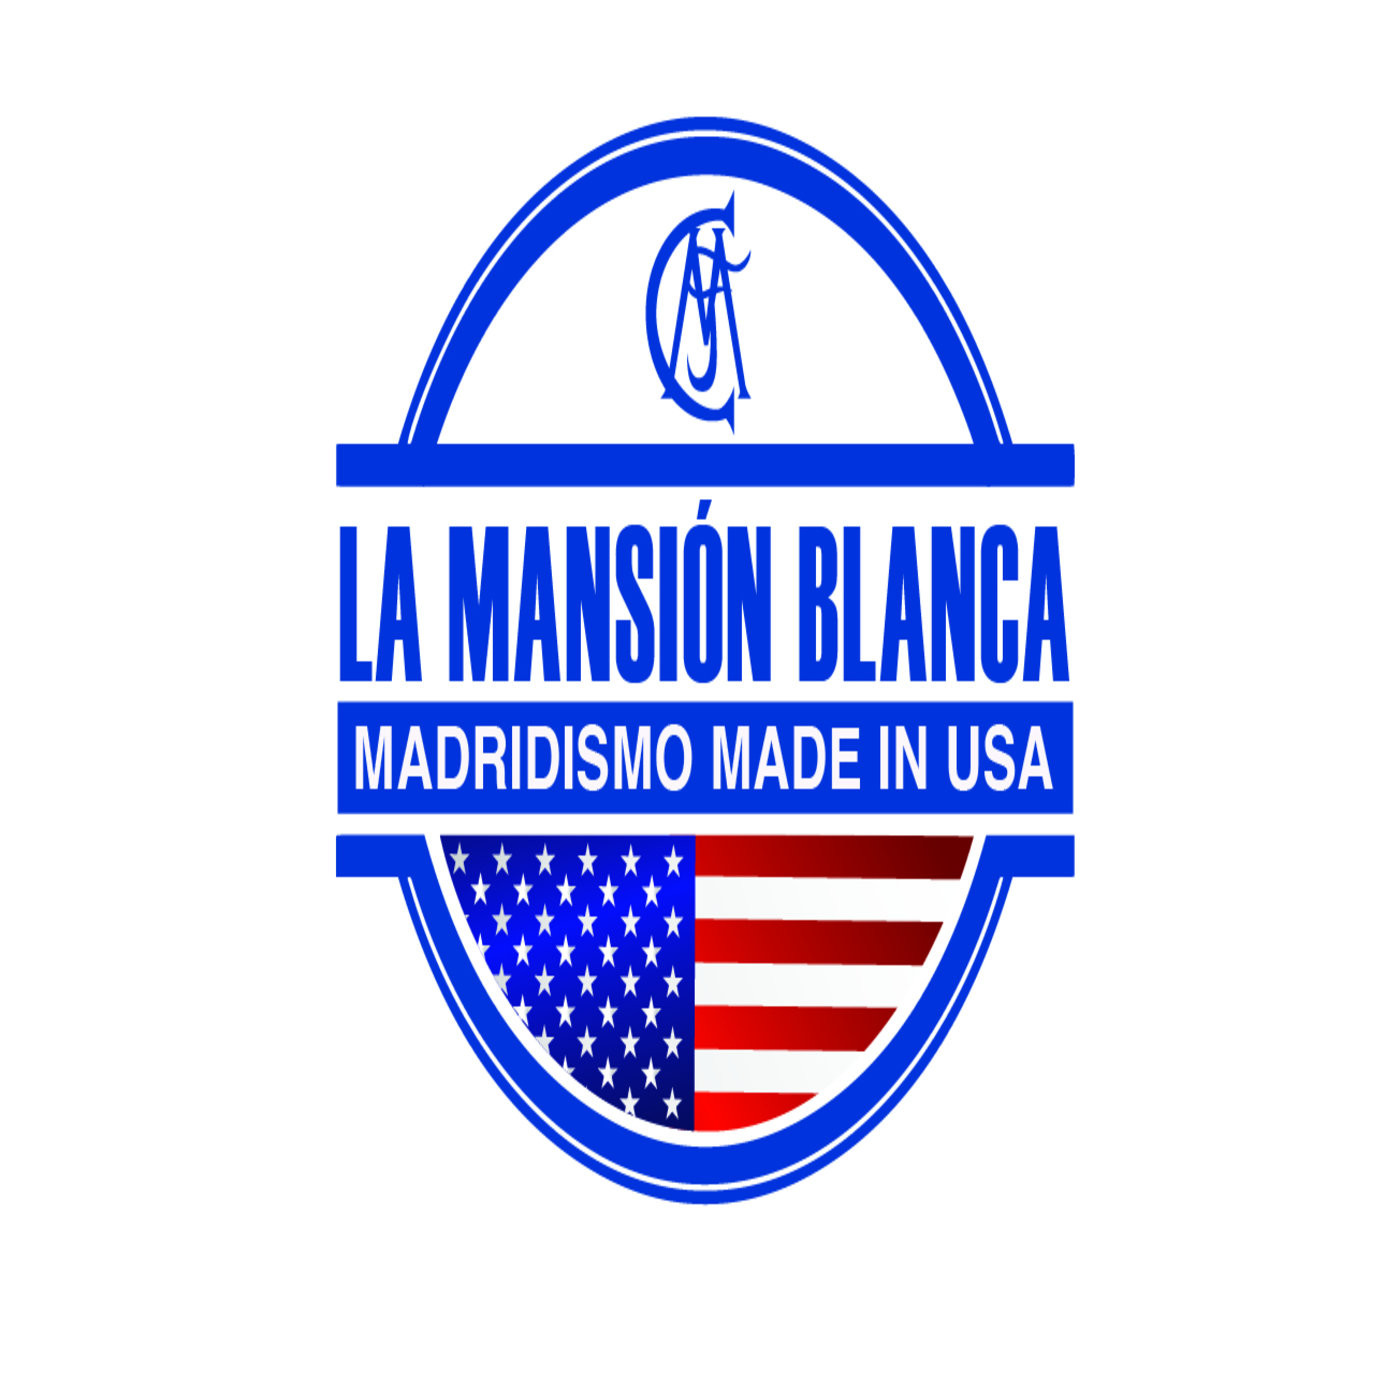 La Mansión Blanca - Madridismo Made in USA